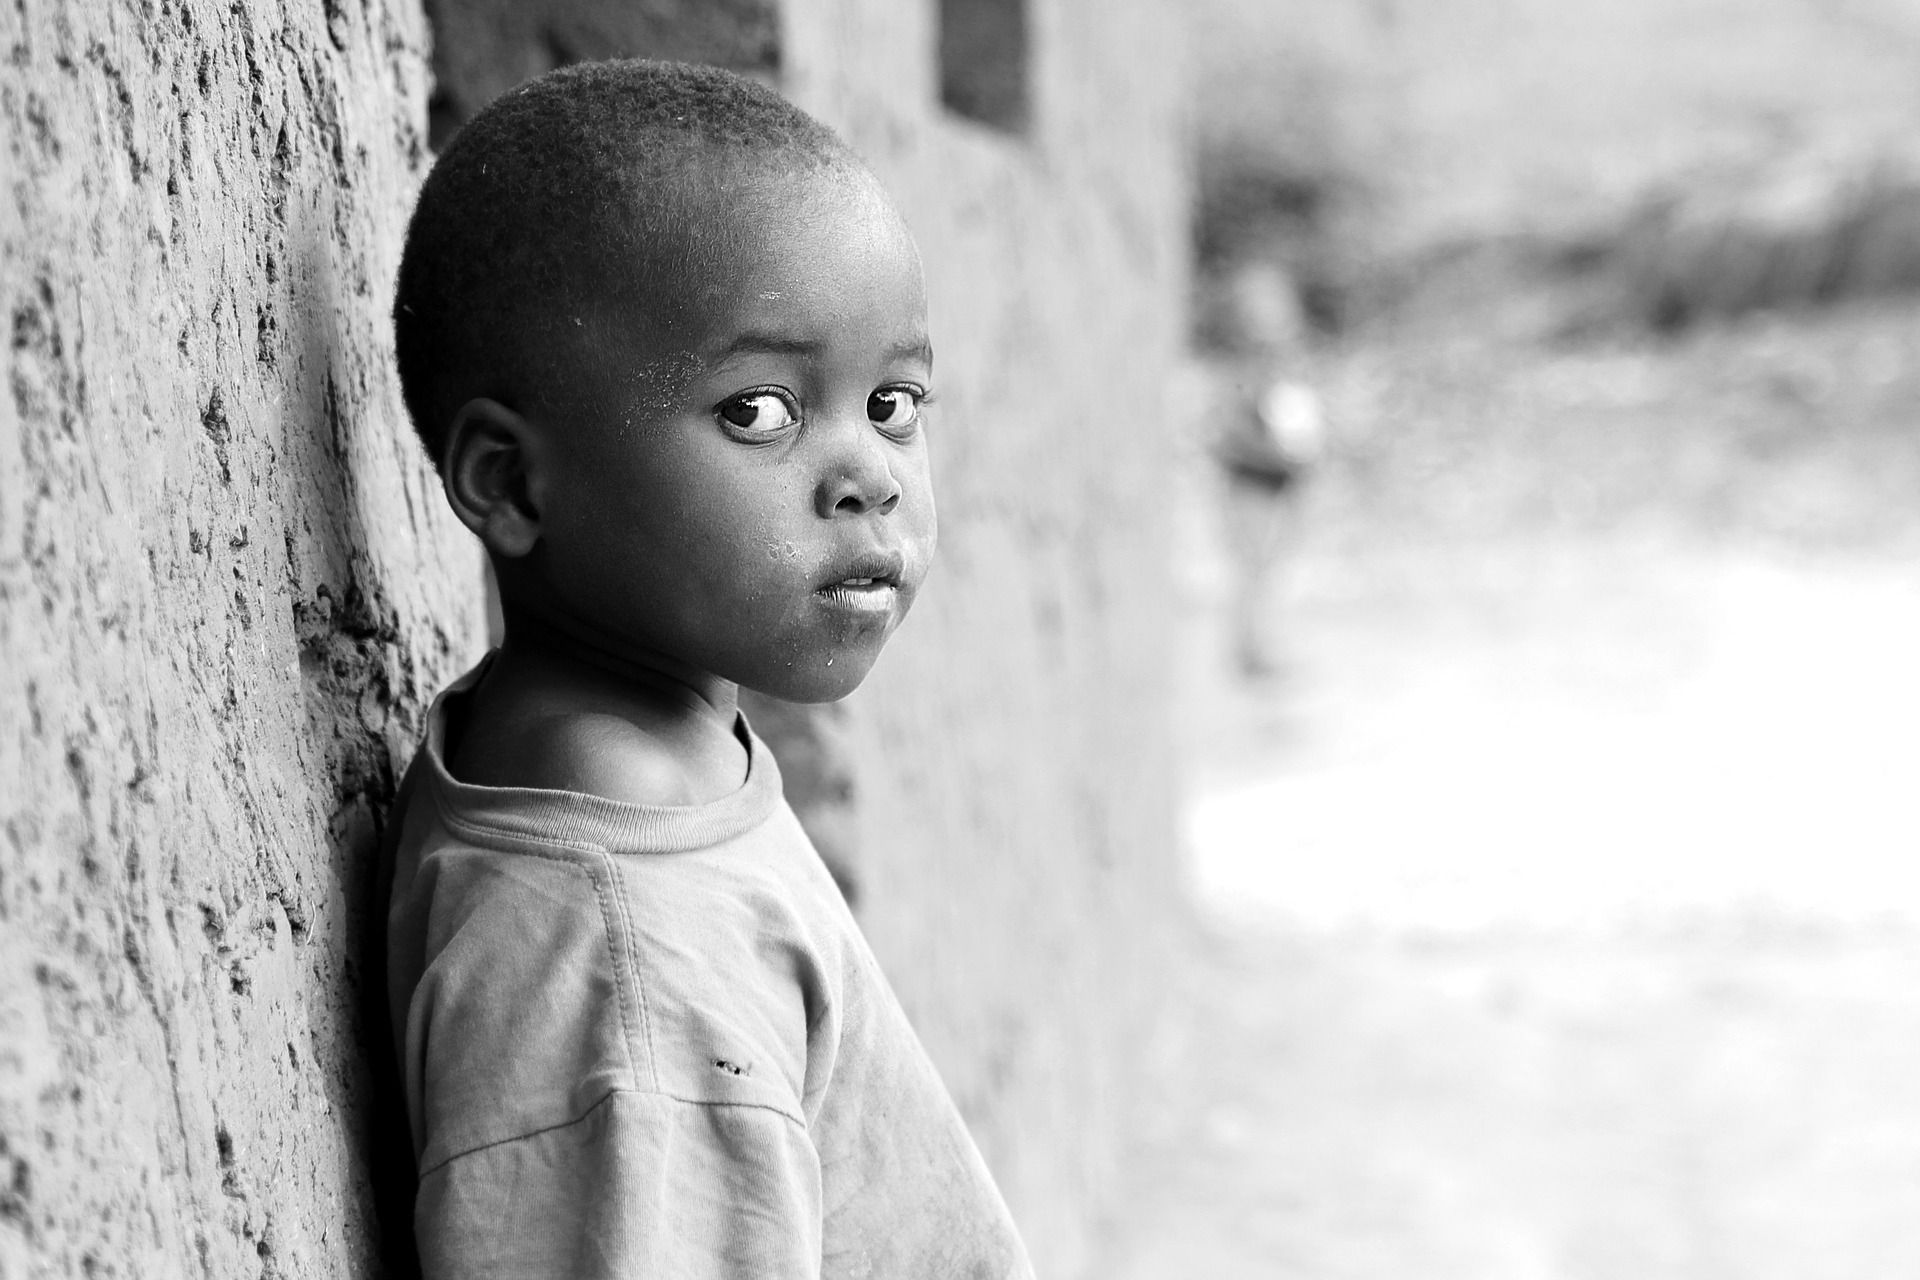 Aumentar el suministro de vacunas en África. UNICEF / Foto: Charles Nambasi - Pixabay